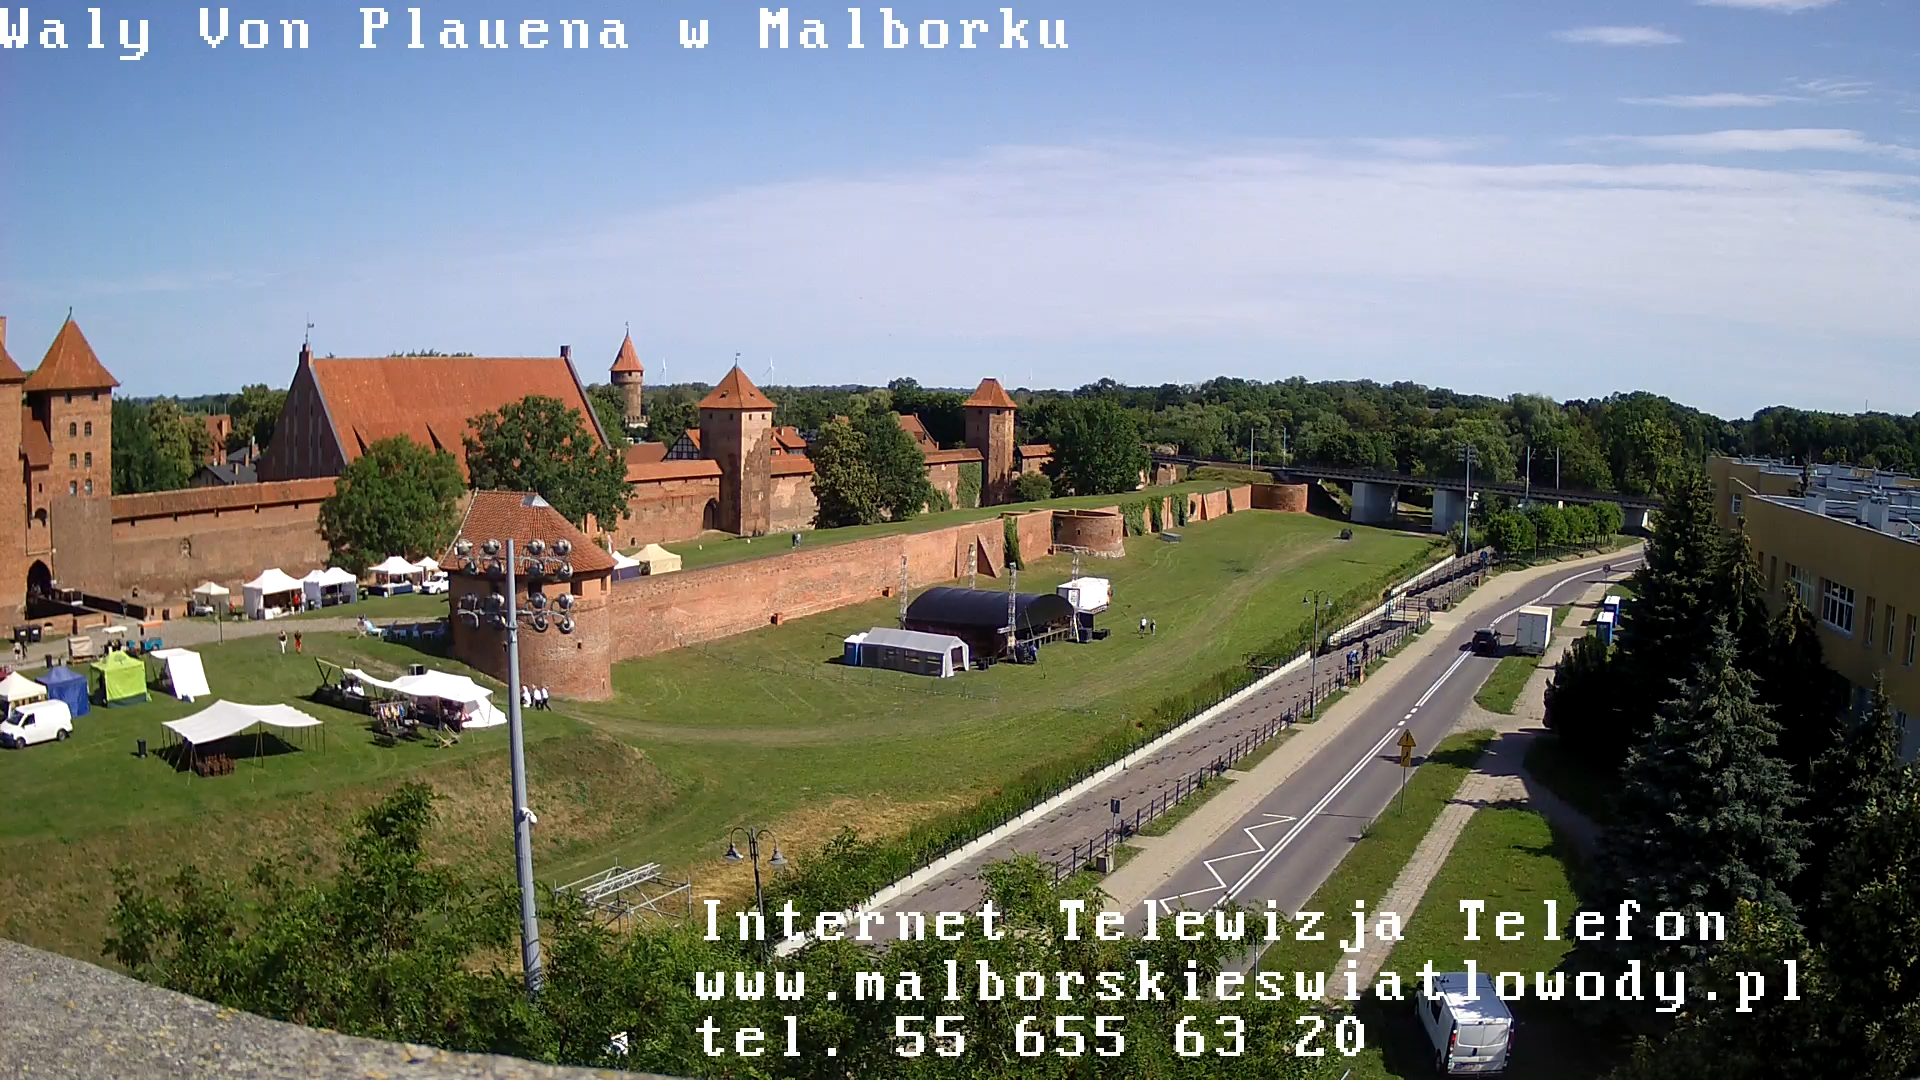 Wały Von Plauena w Malborku kamera na żywo